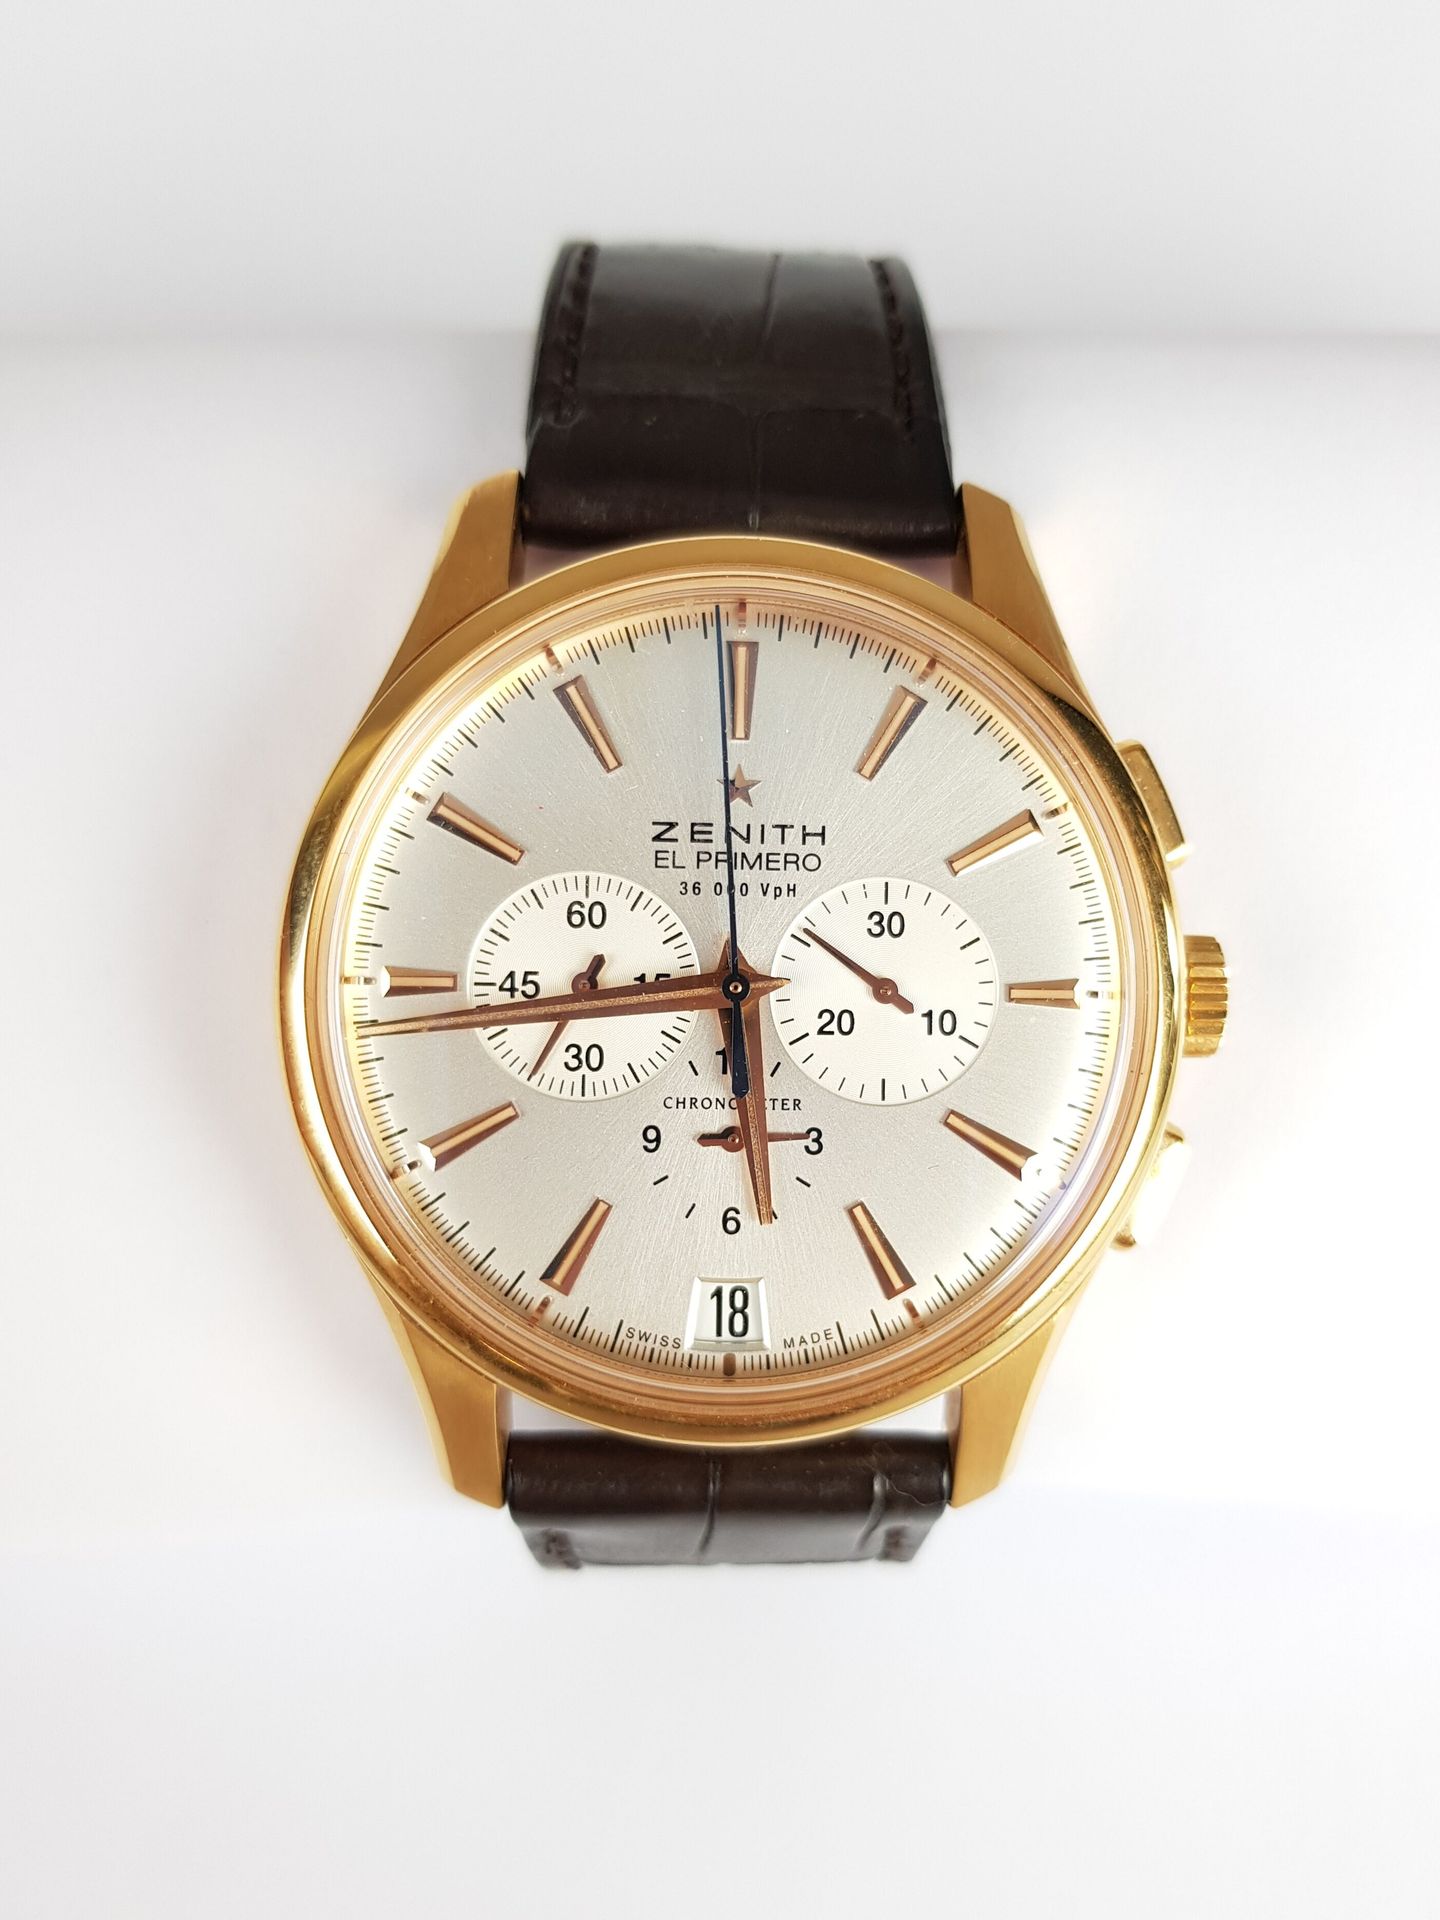 Null Precio : 4 000 euros

ZENITH

El primero

Reloj cronógrafo de oro rosa de 7&hellip;